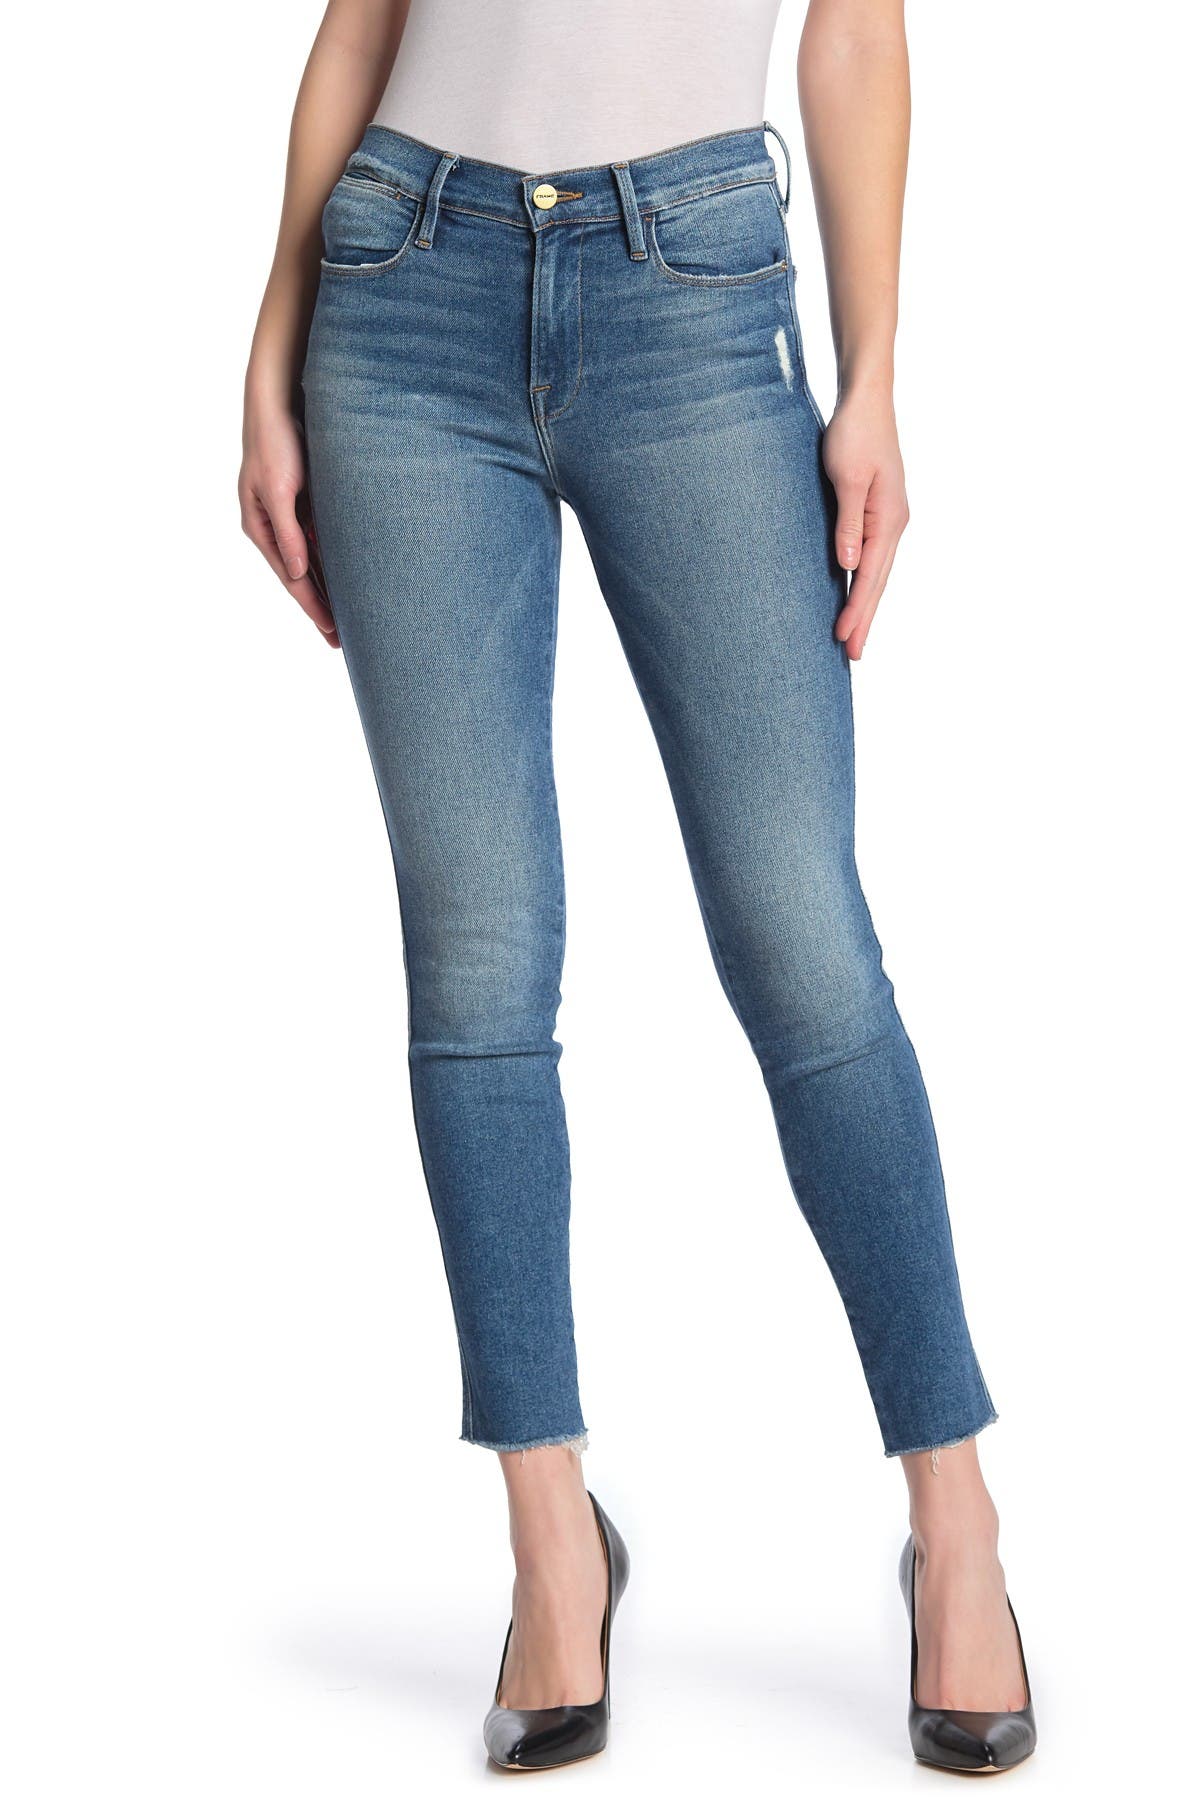 nordstrom rack frame jeans